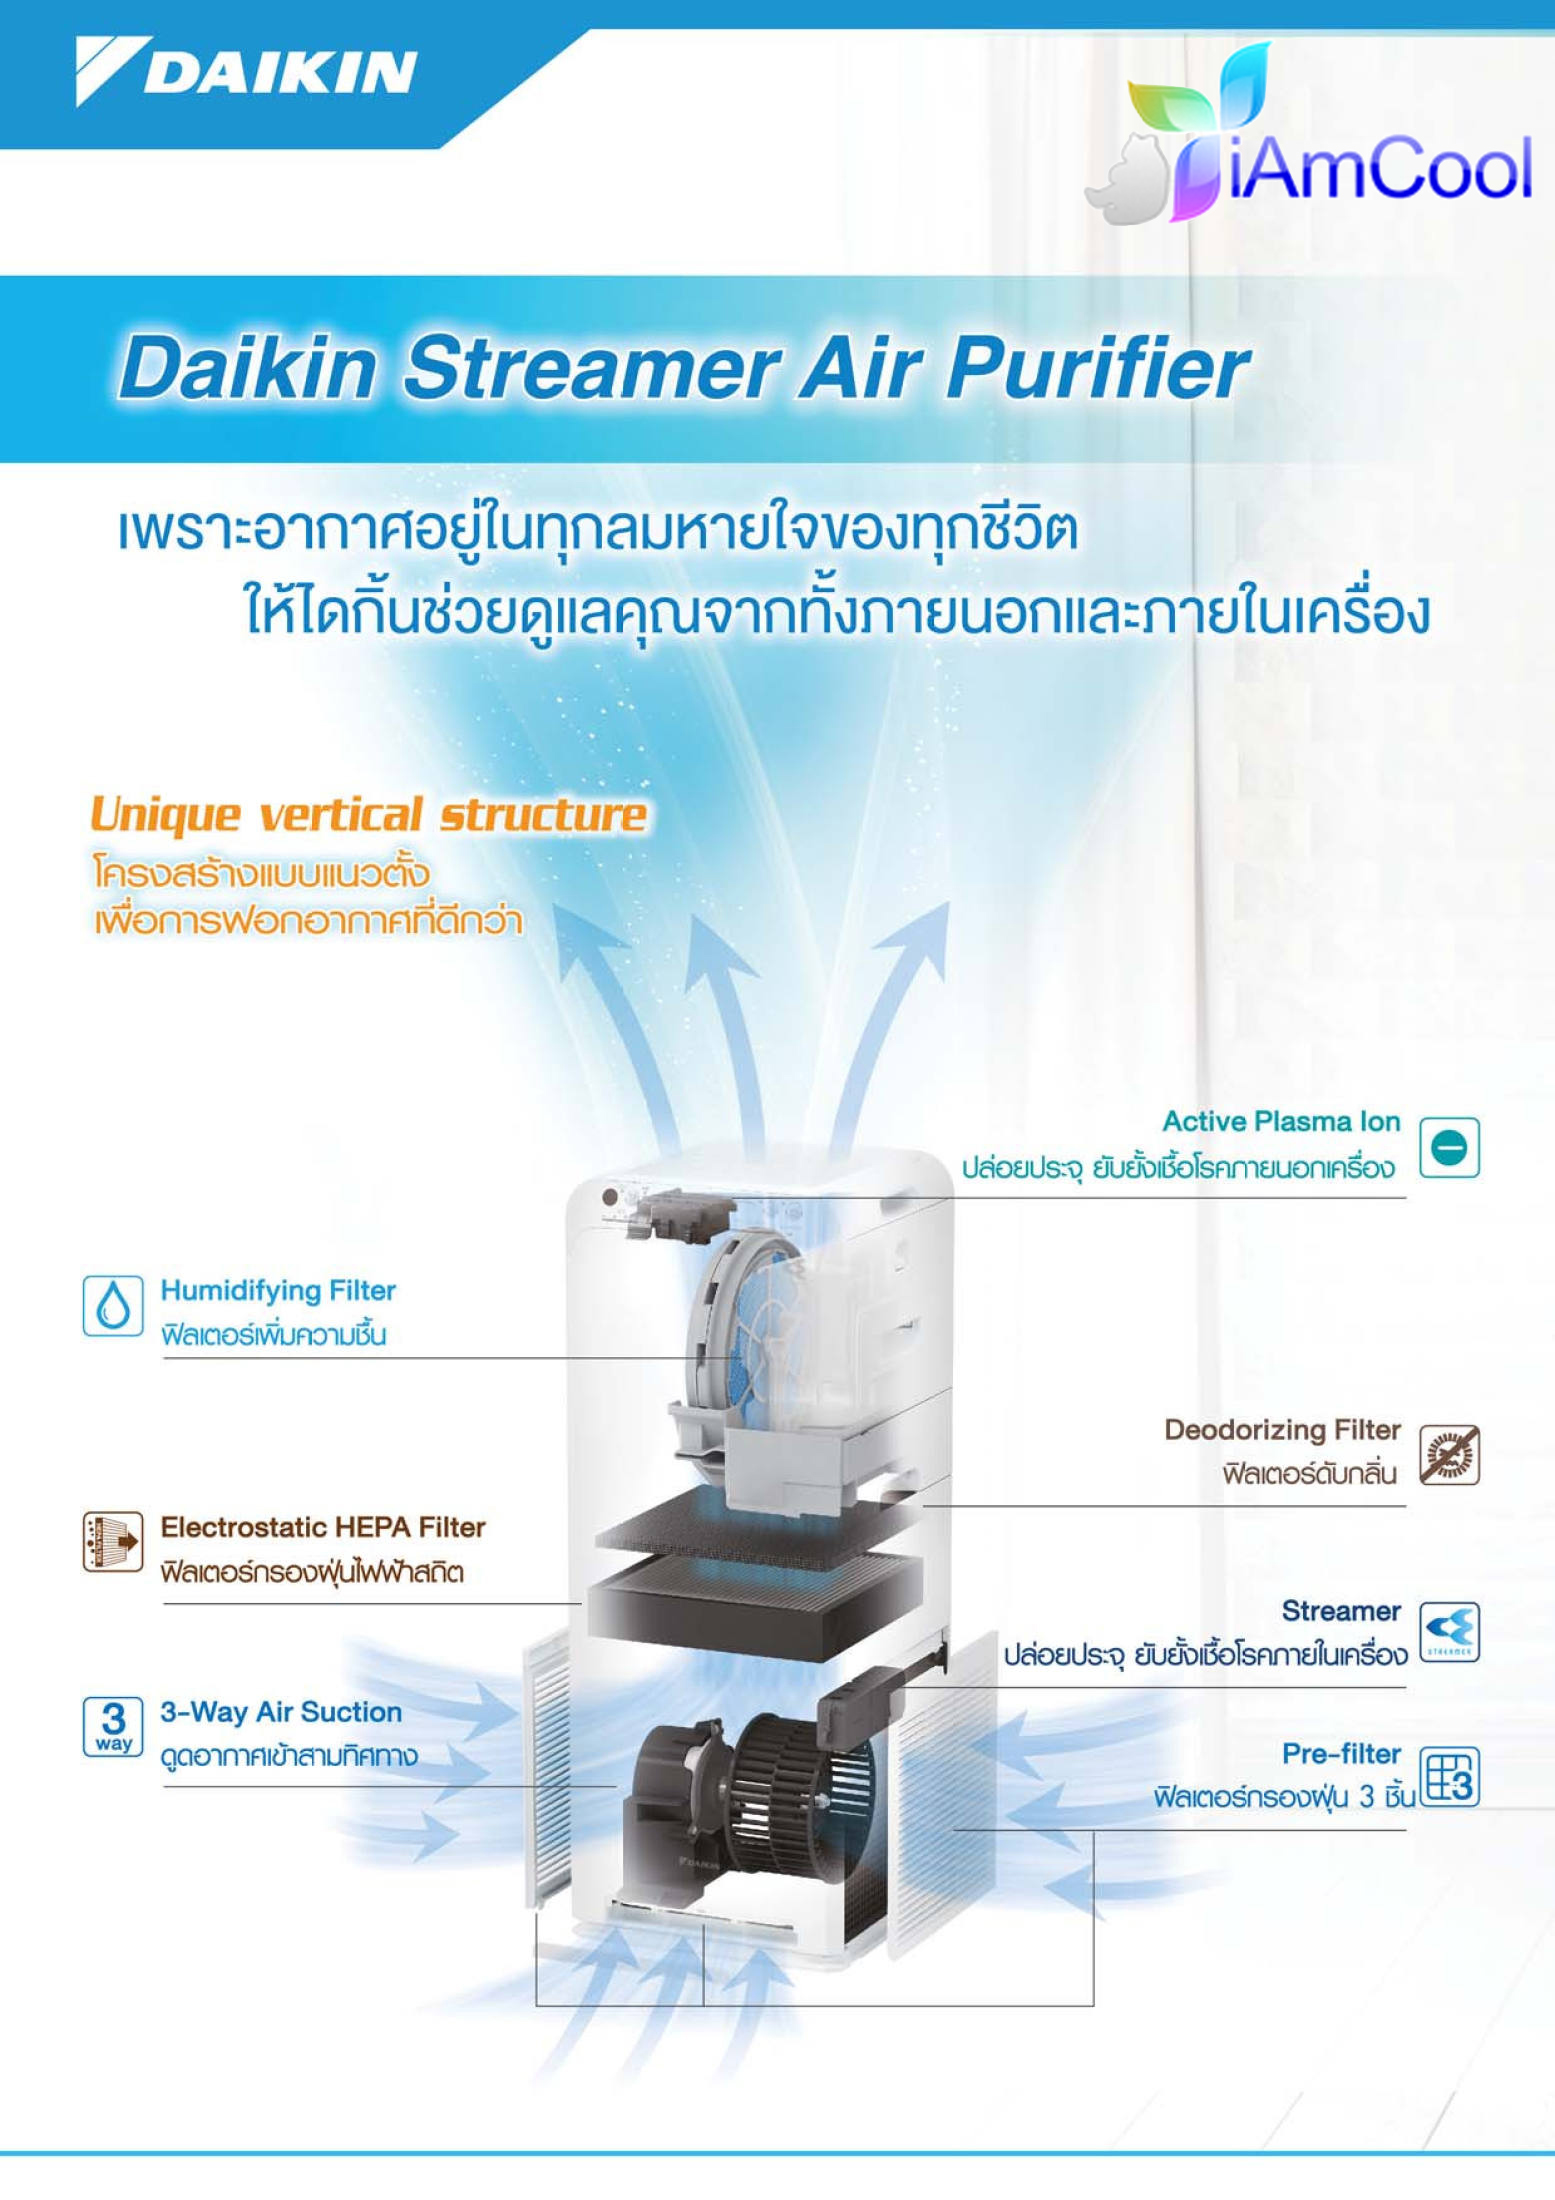 ข้อมูลเพิ่มเติมของ เครื่องฟอกอากาศ Daikin รุ่น MC40UVM6 ระบบ Streamer/Electrostatic HEPA Filter/Active Plasma Ion (รับประกันศูนย์ 1 ปี)